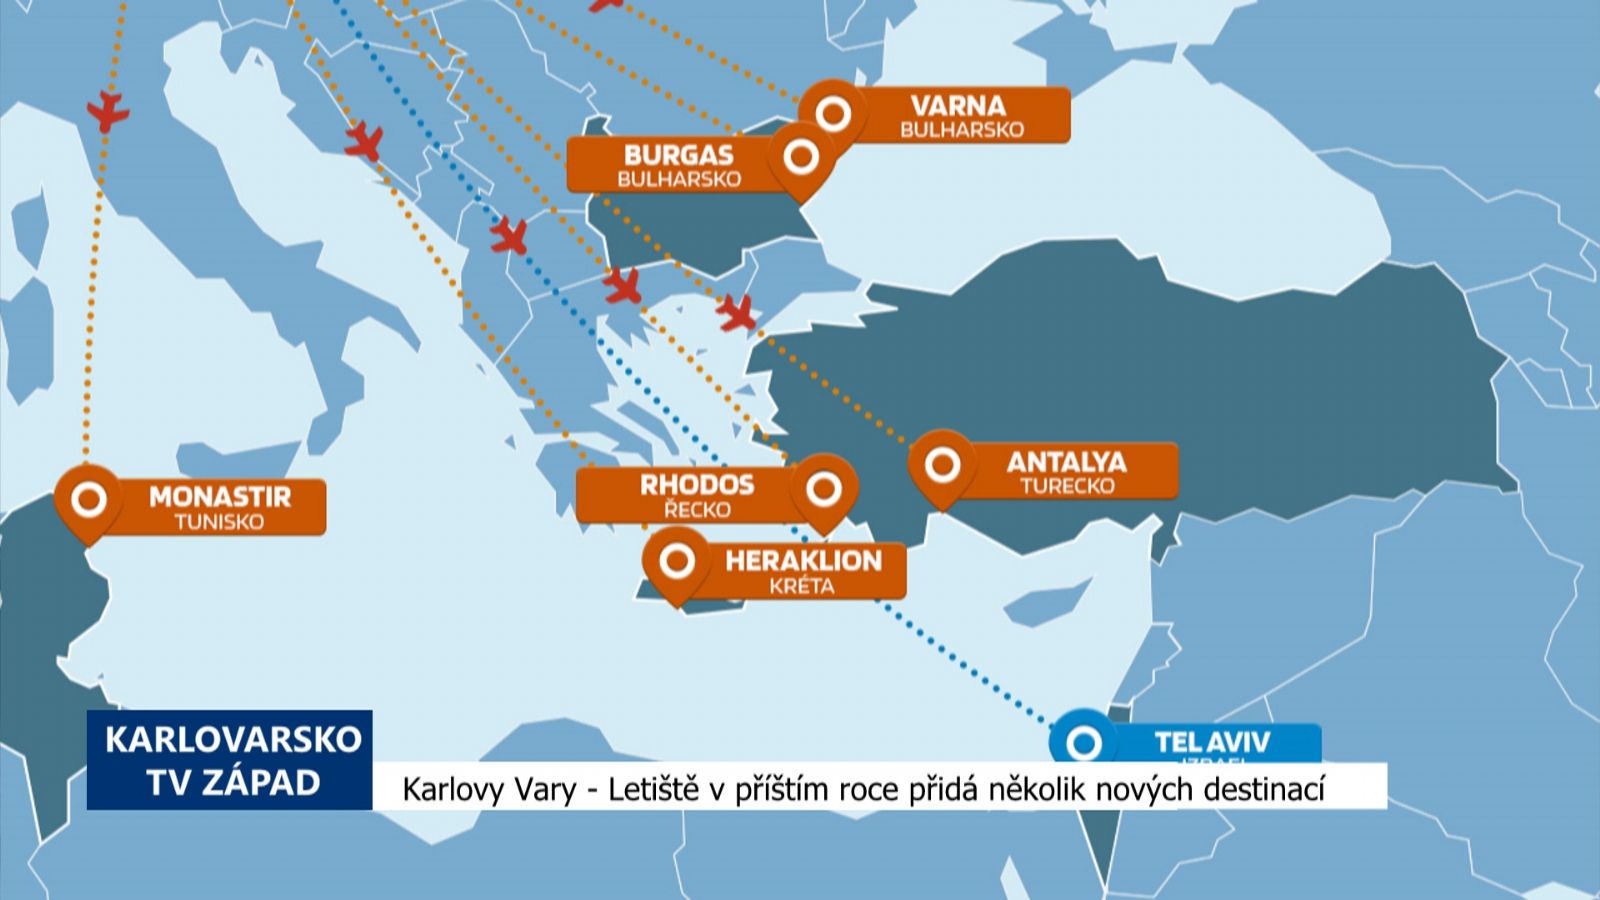 Karlovy Vary: Letiště v příštím roce přidá několik nových destinací (TV Západ)